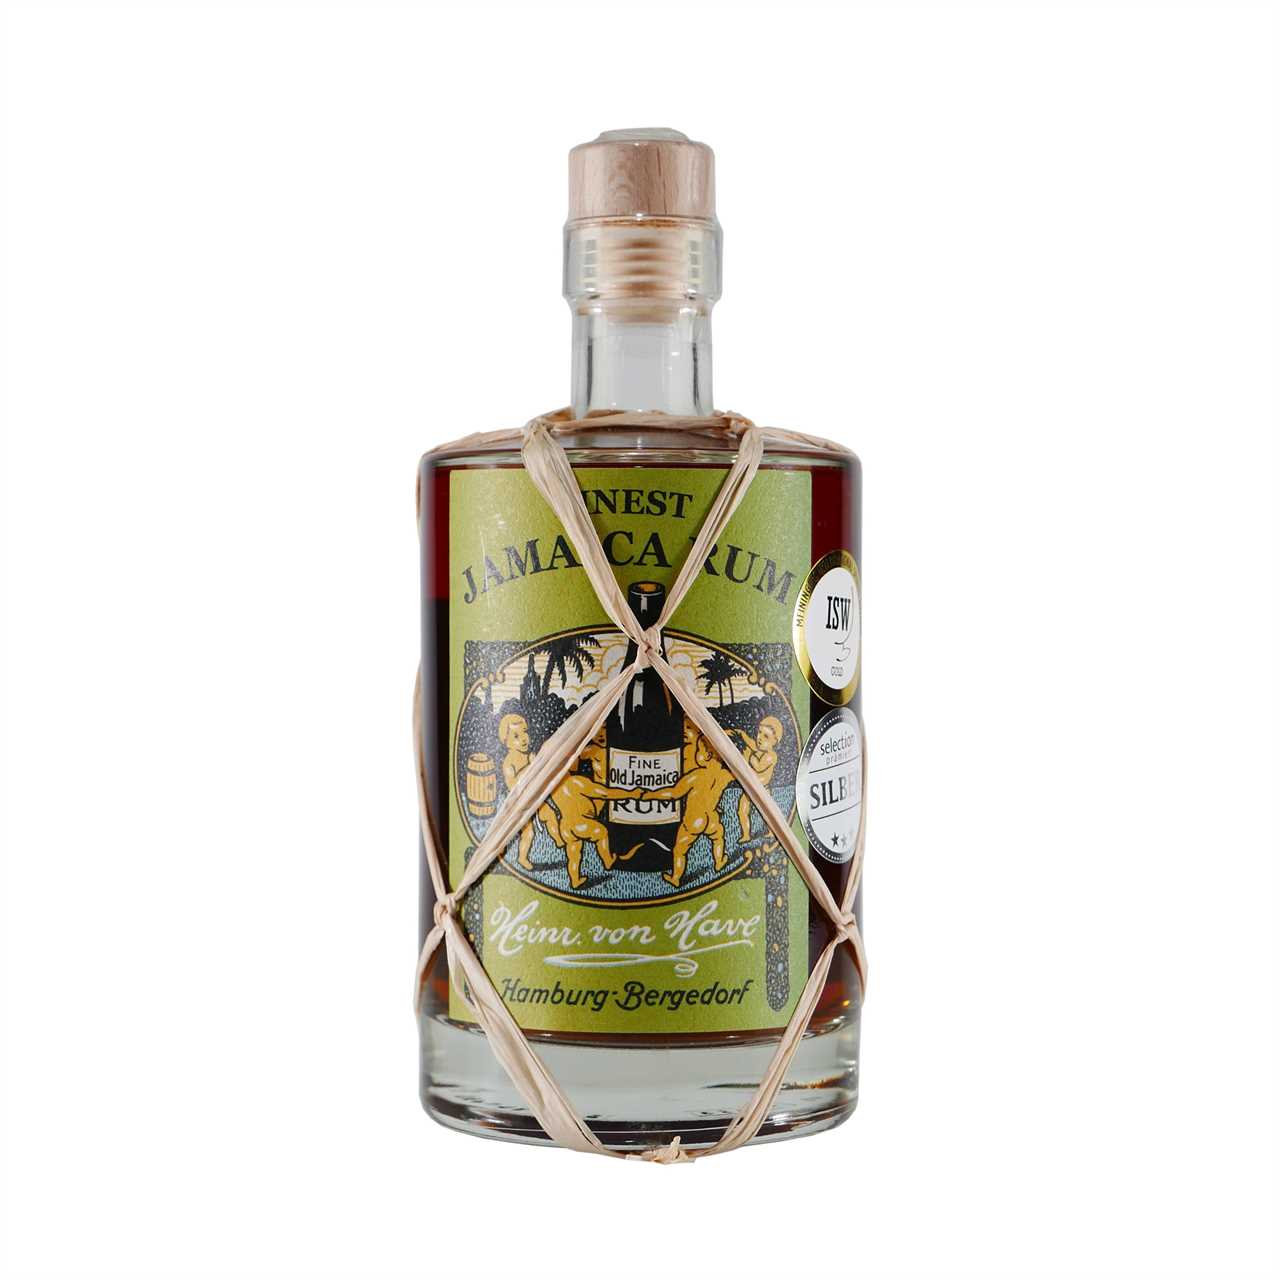 Heinr. von Have Finest Jamaica Rum mit Geschenk-HK